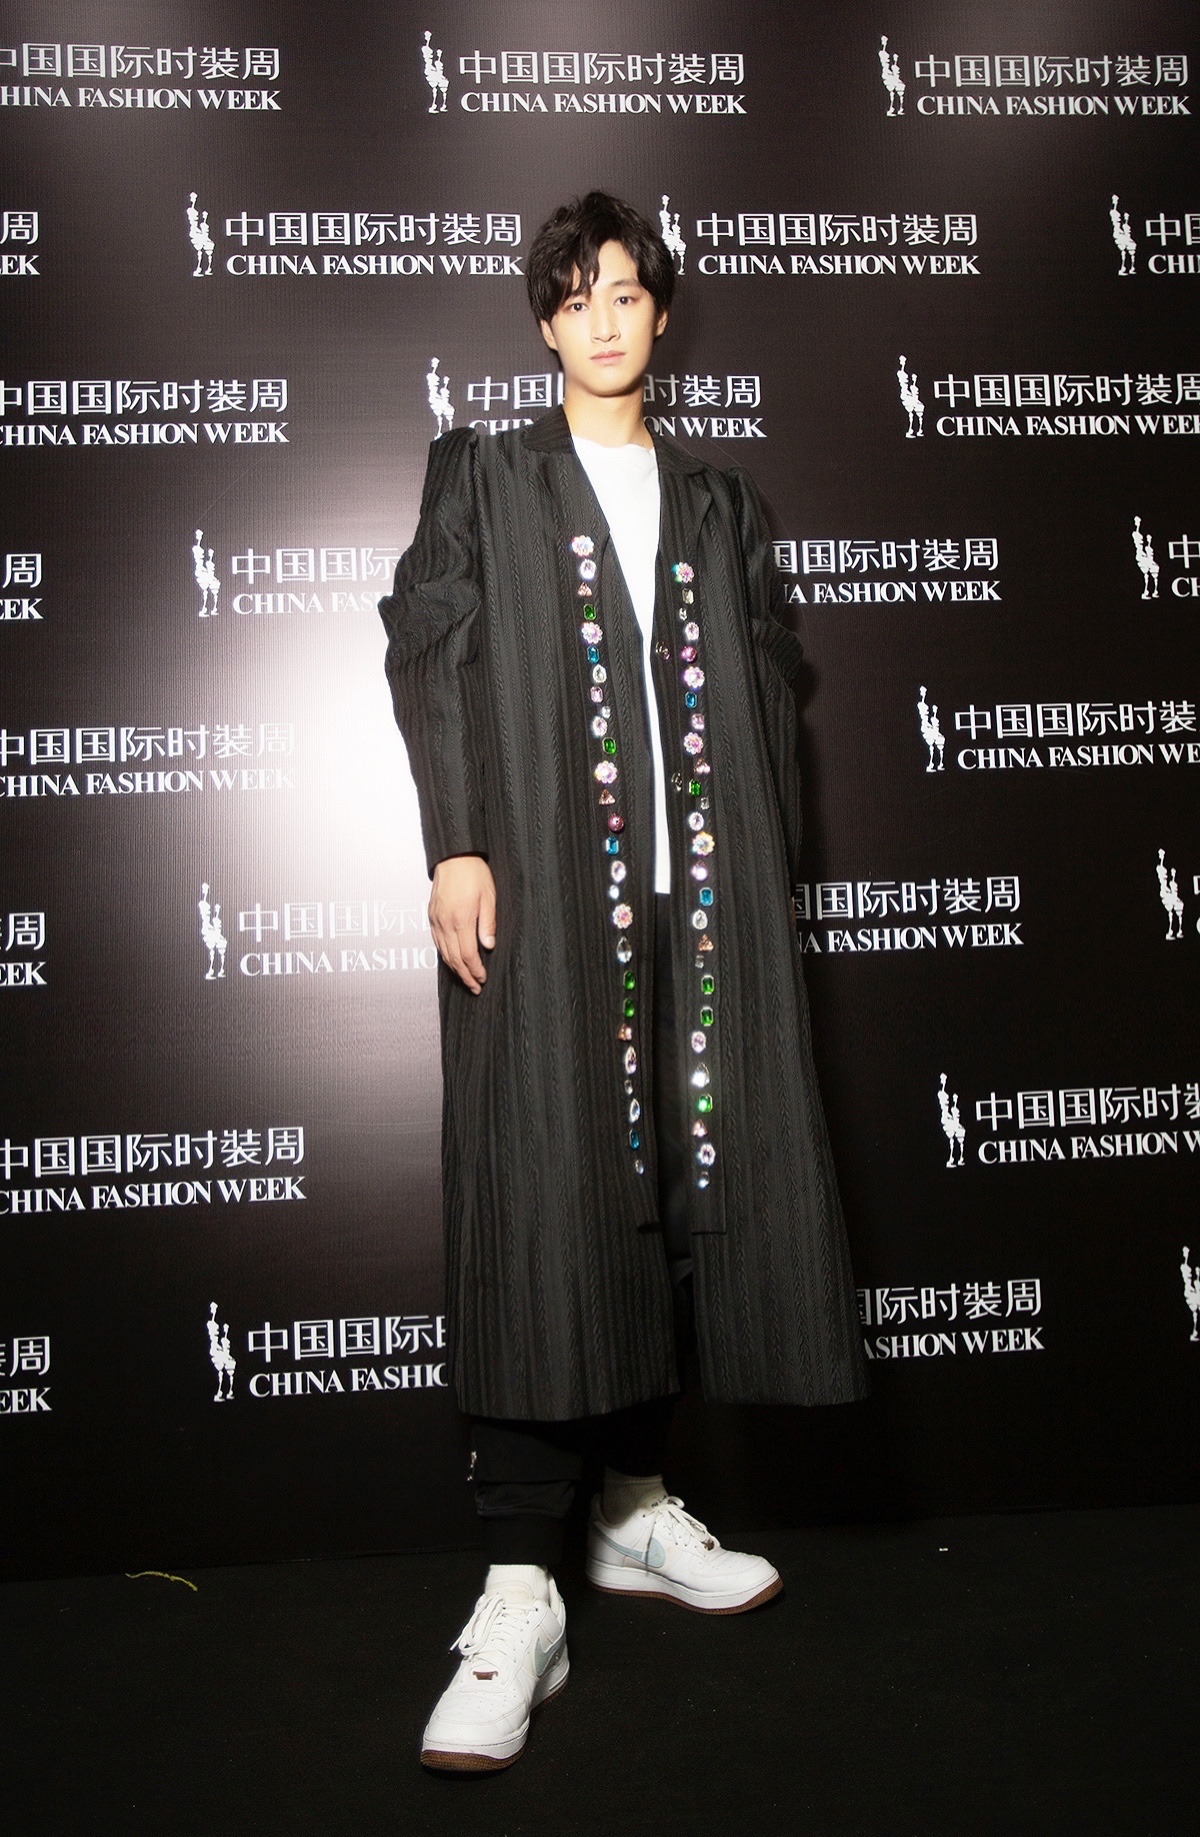 代羽宸出席2021中国国际时装周 帅气演绎设计师品牌CHENG CHENG魅力